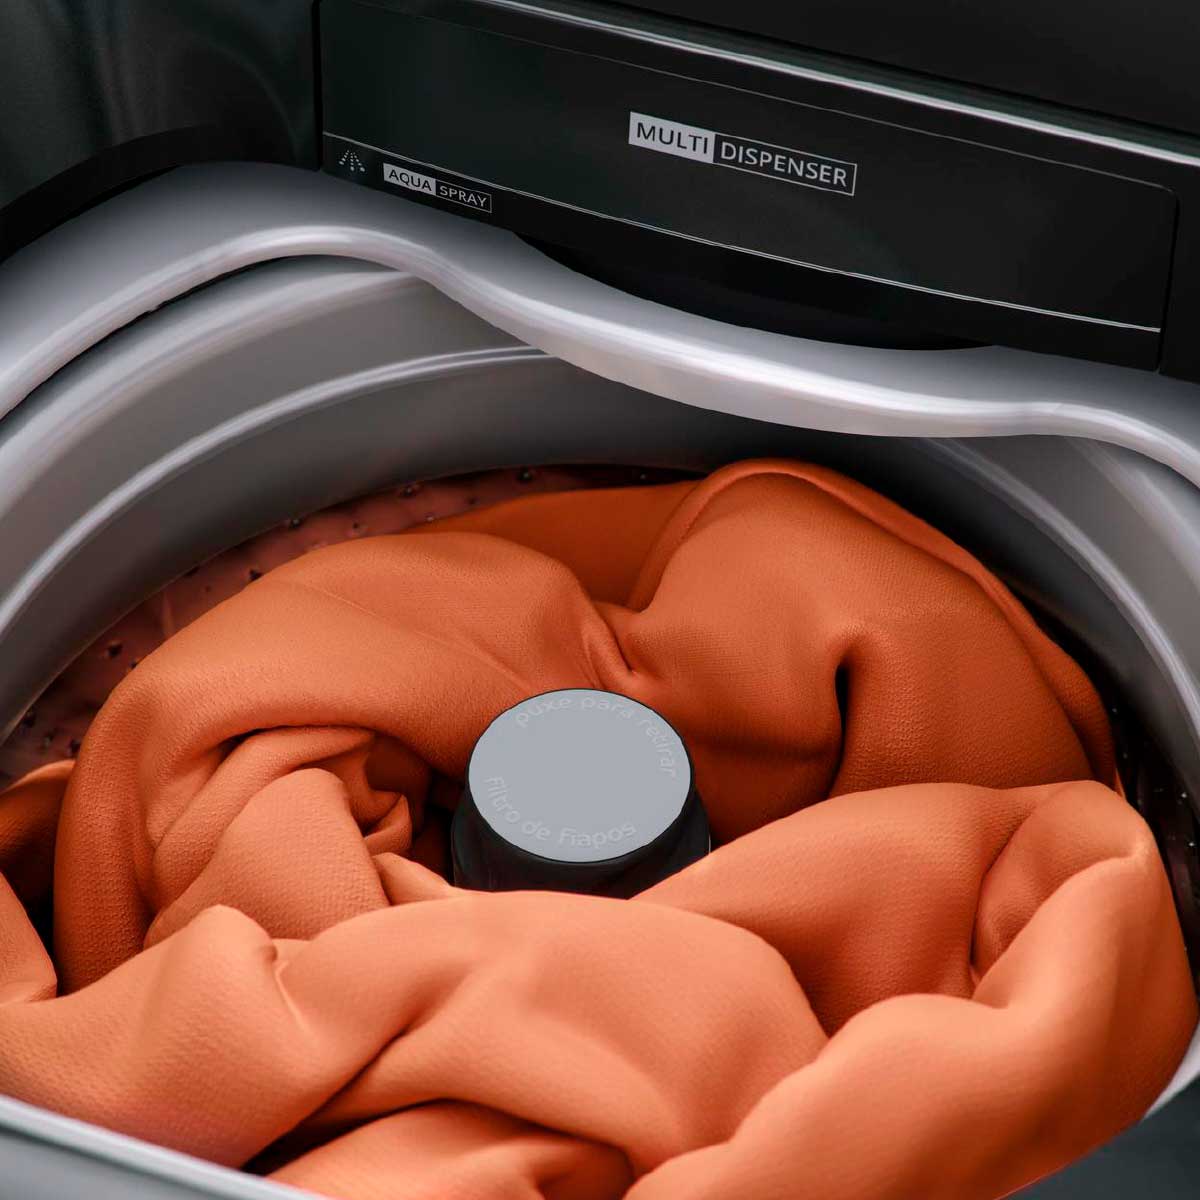 maquina-de-lavar-brastemp-12kg-titanio-com-ciclo-tira-manchas-advanced-e-ciclo-antibolinha-bwk12a9-220v-4.jpg